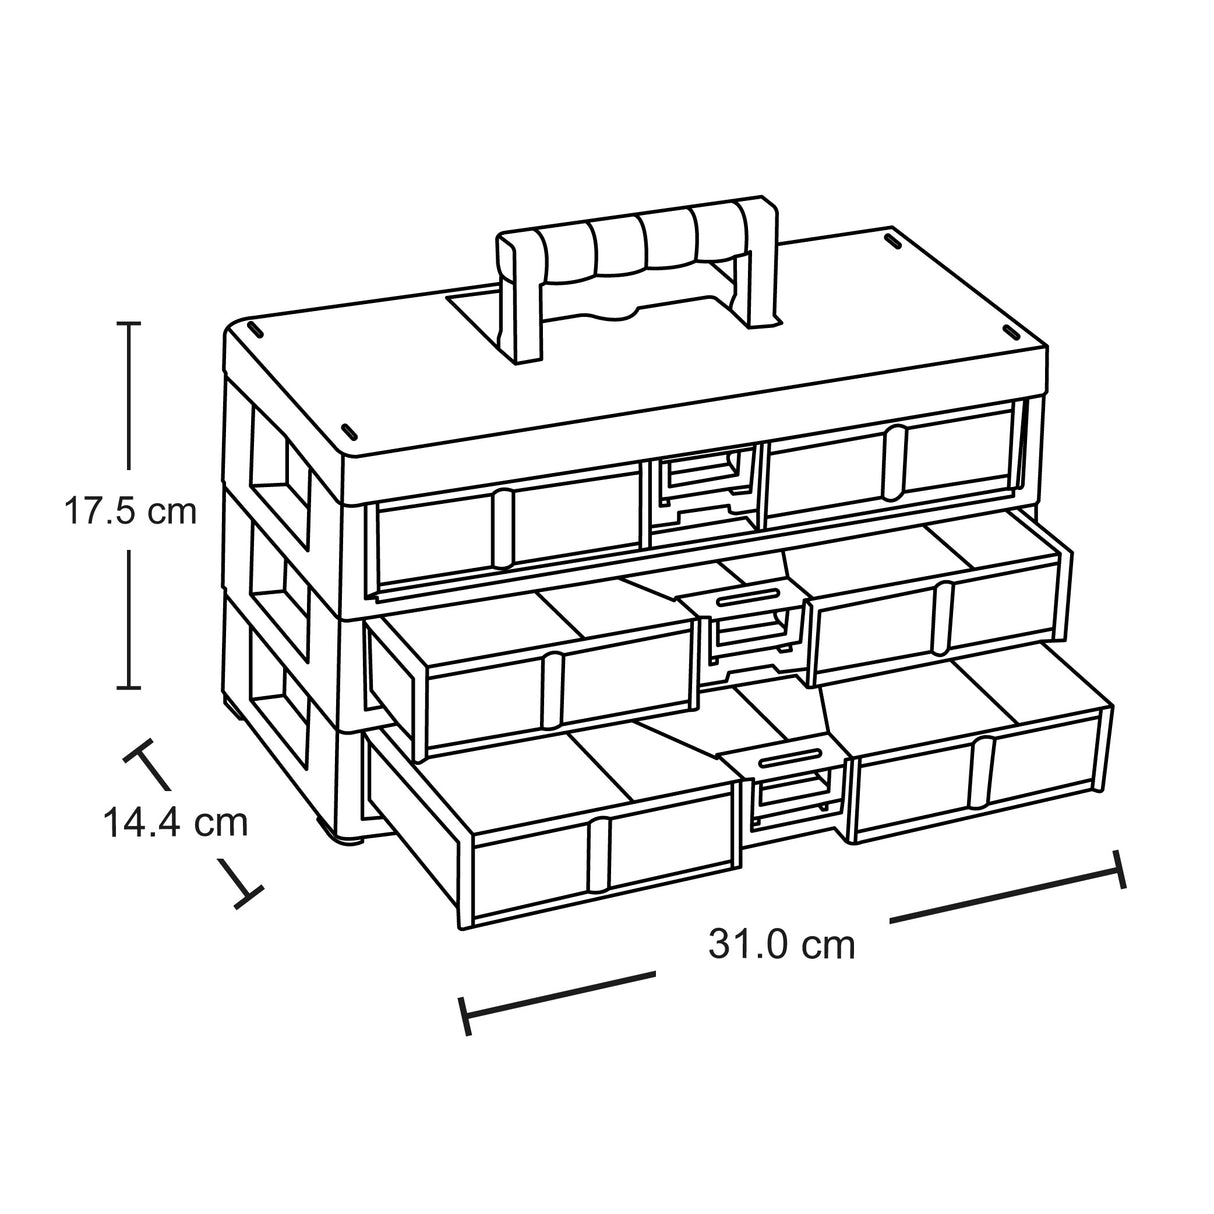 Caja Organizadora Modular 3 Niveles 31x14x28 cms Rimax – Getway